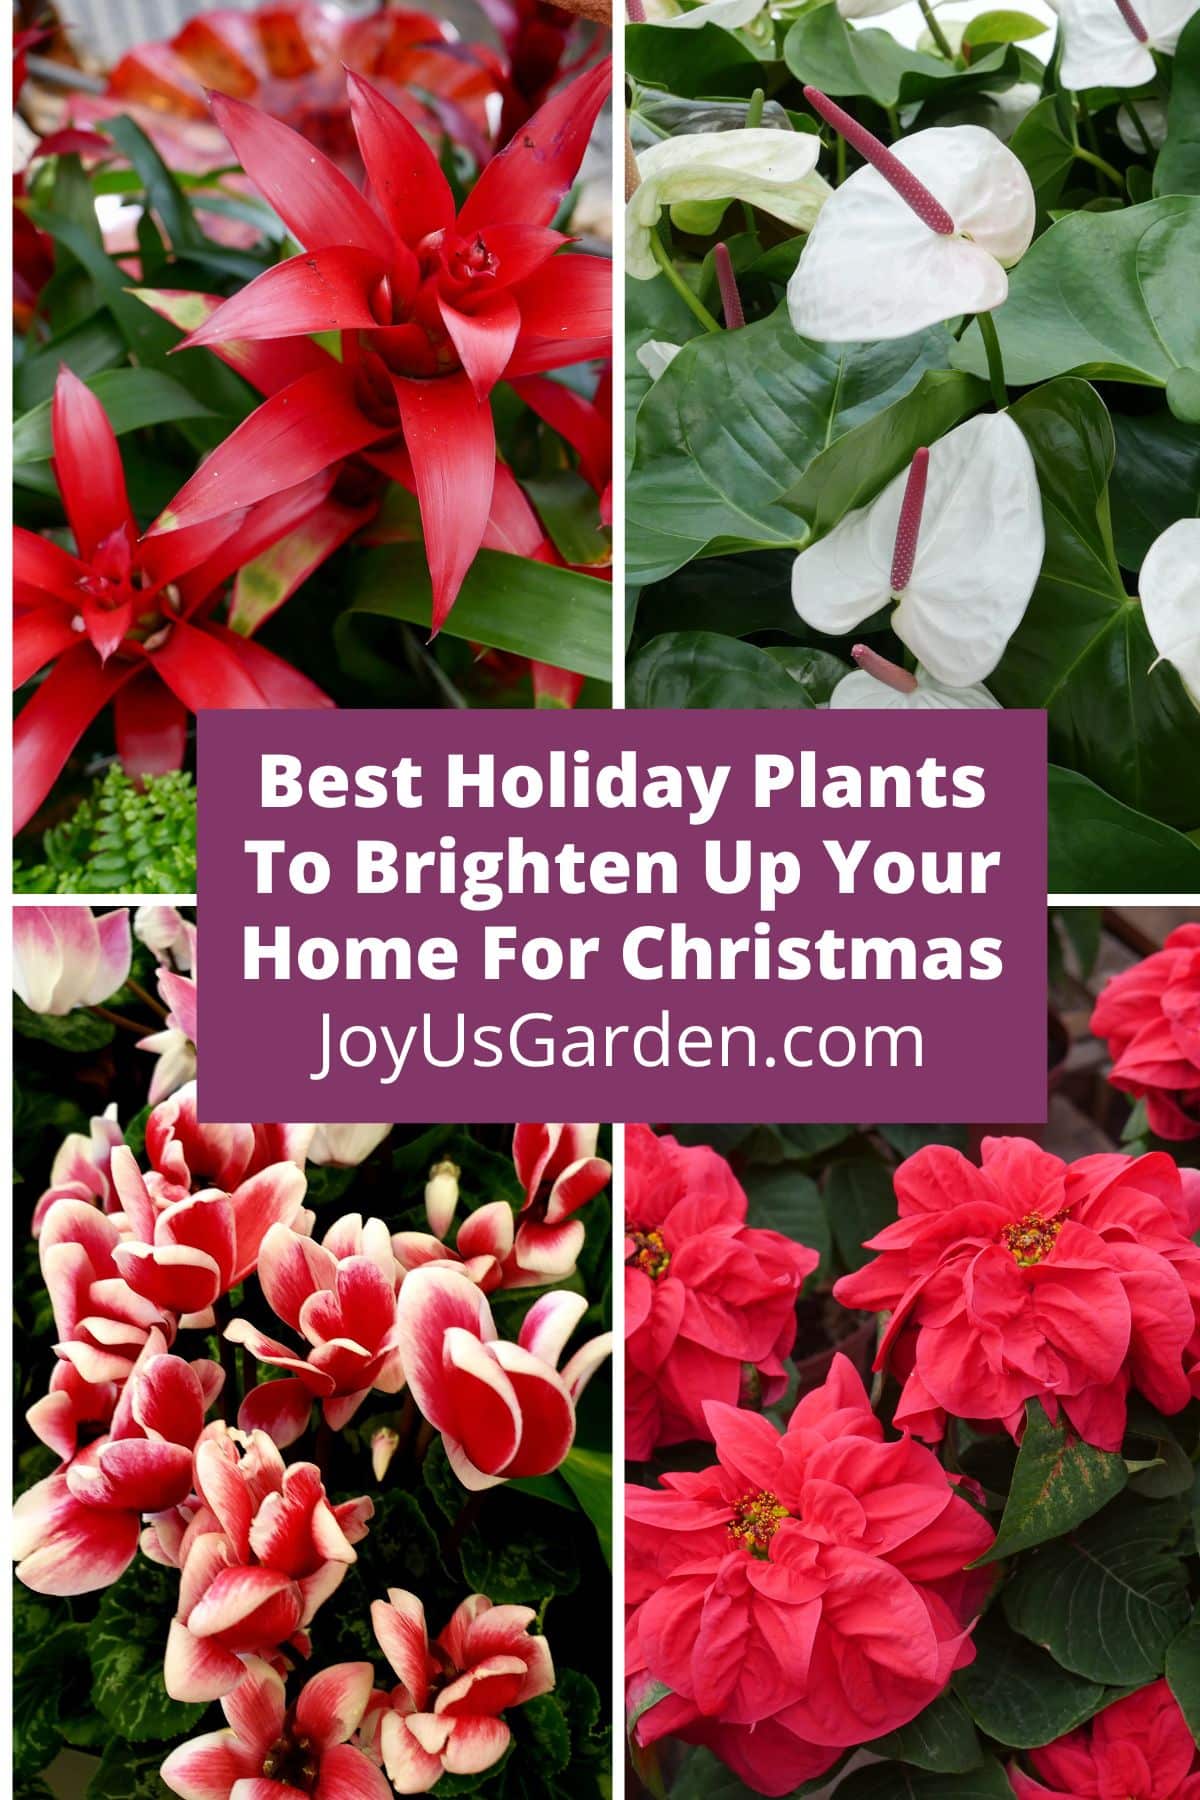  12 najboljih prazničnih biljaka za uljepšavanje vašeg doma za Božić